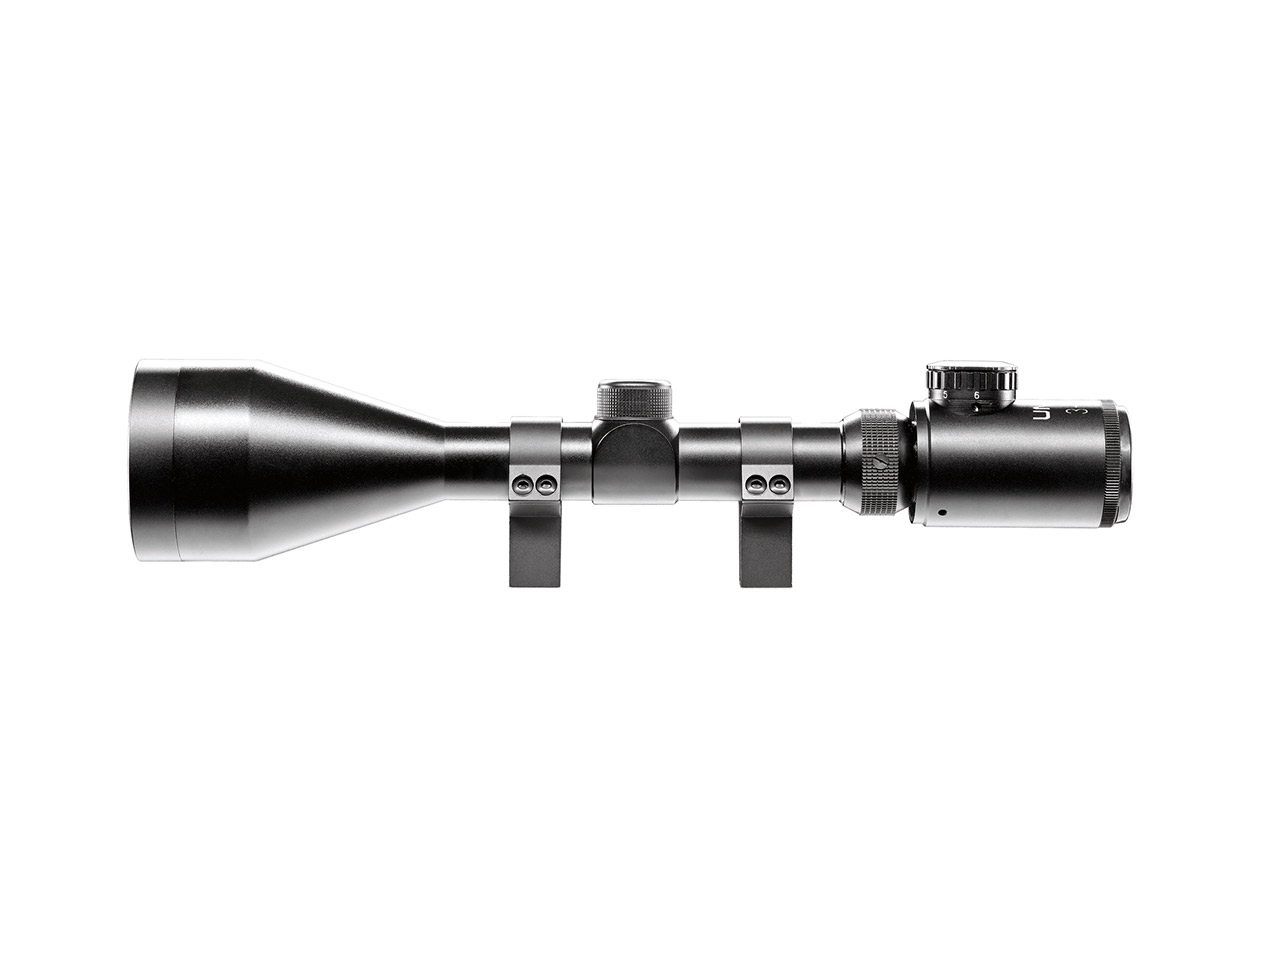 Zielfernrohr Umarex RS 3-9x56 FI Duplex Absehen beleuchtet inklusive Ringmontagen für 11 mm Prismenschiene